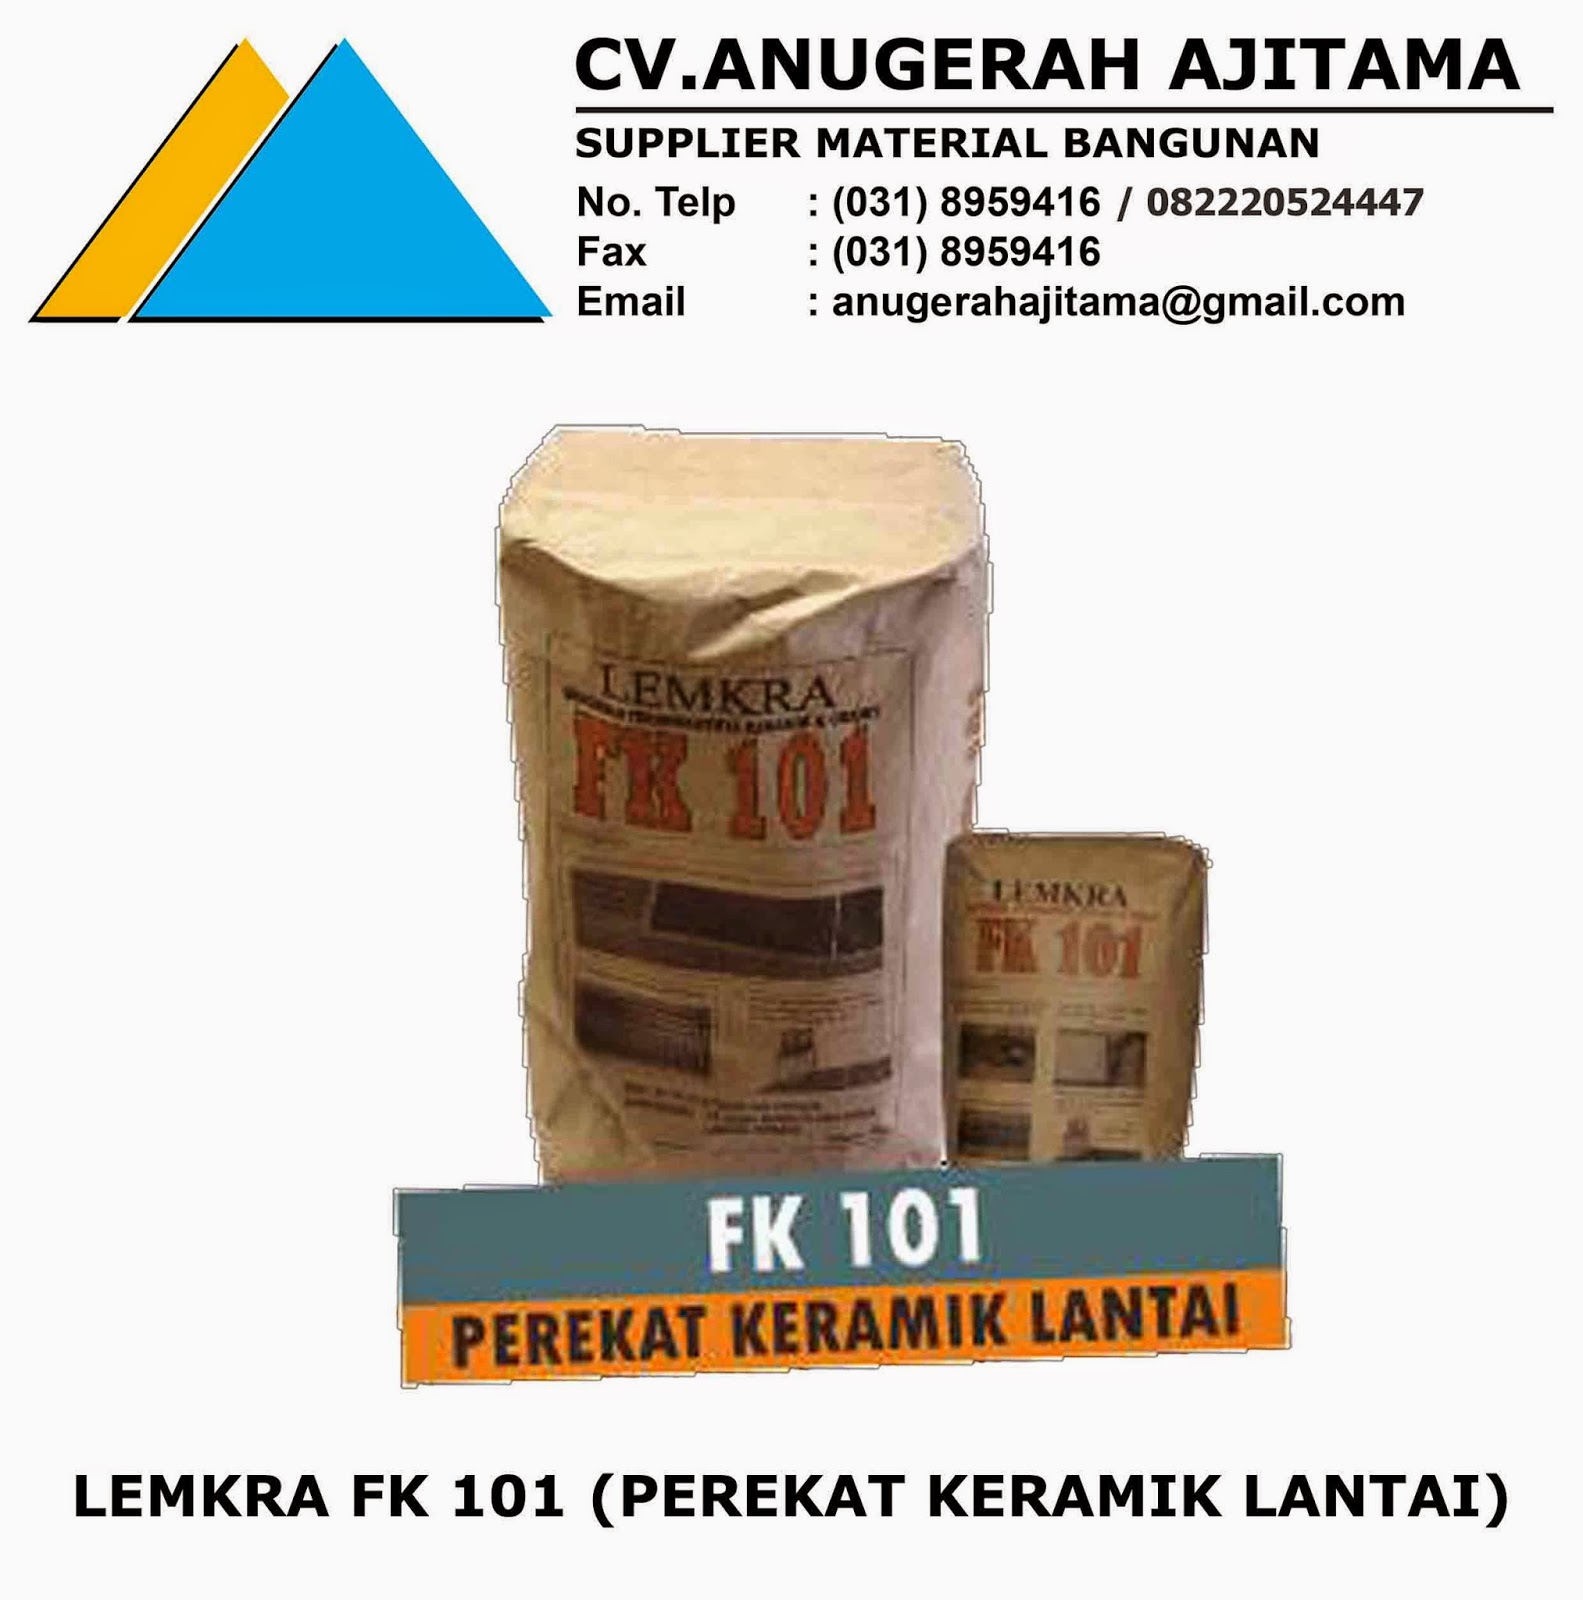 Jual Lemkra Fk 101 Cv Anugerah Ajitama